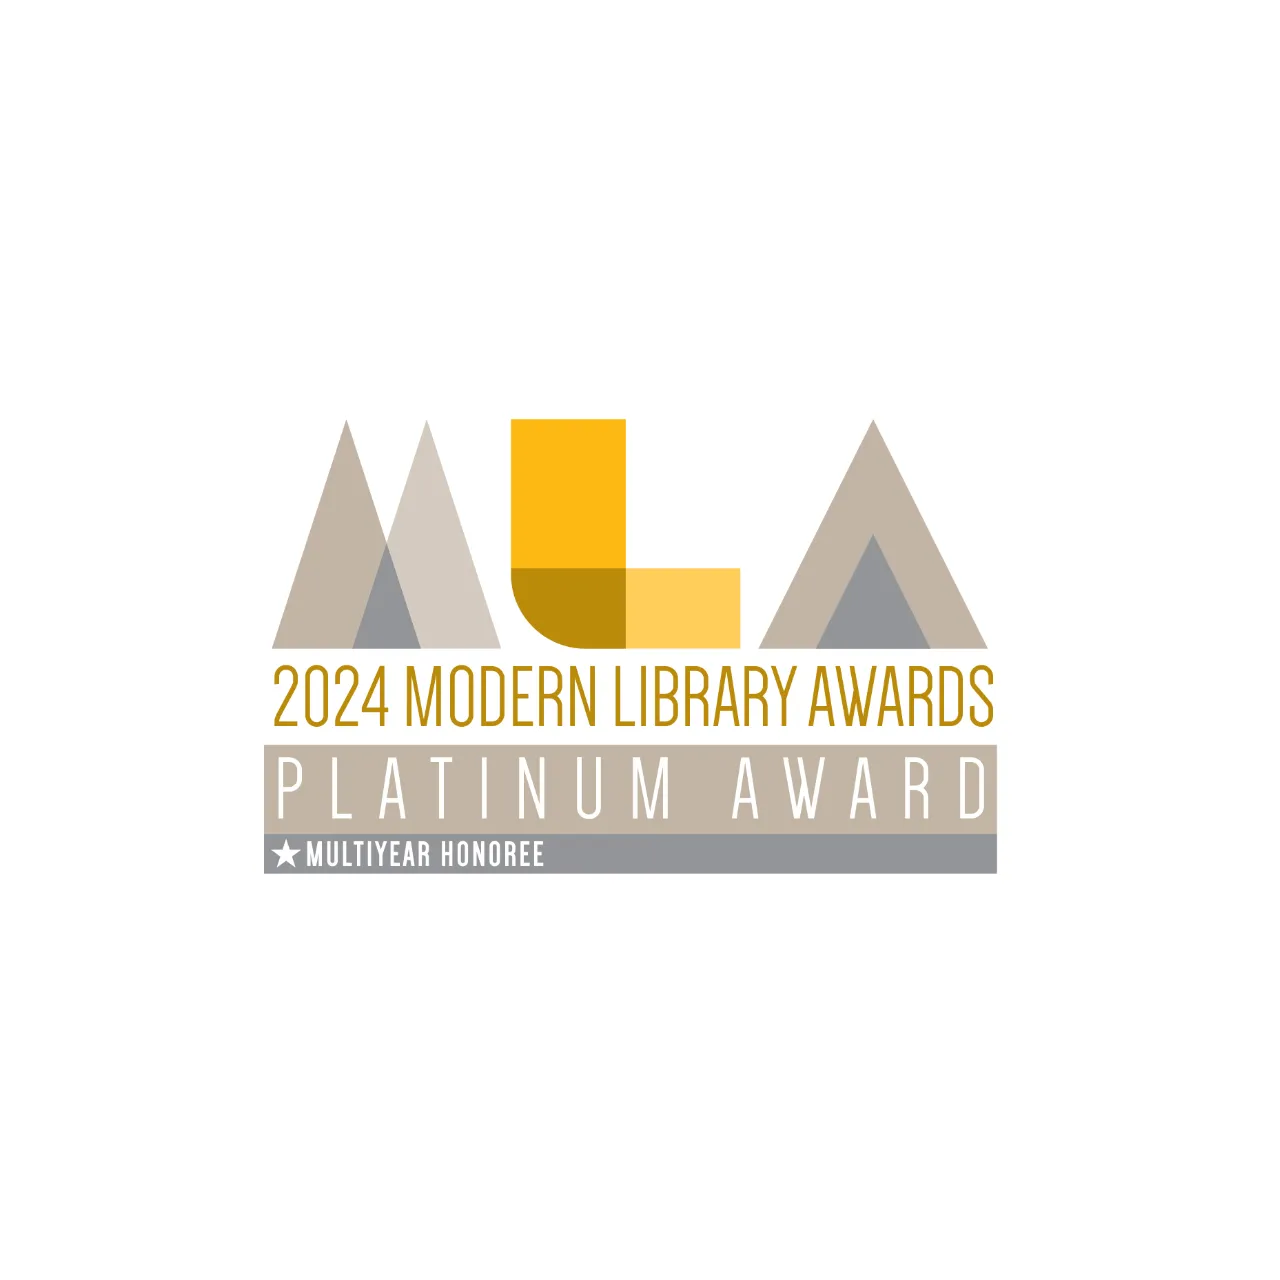 US-Partner bei Modern Library Awards 2024 erfolgreich: Zeutschel Aufsichtscanner mehrfach ausgezeichnet